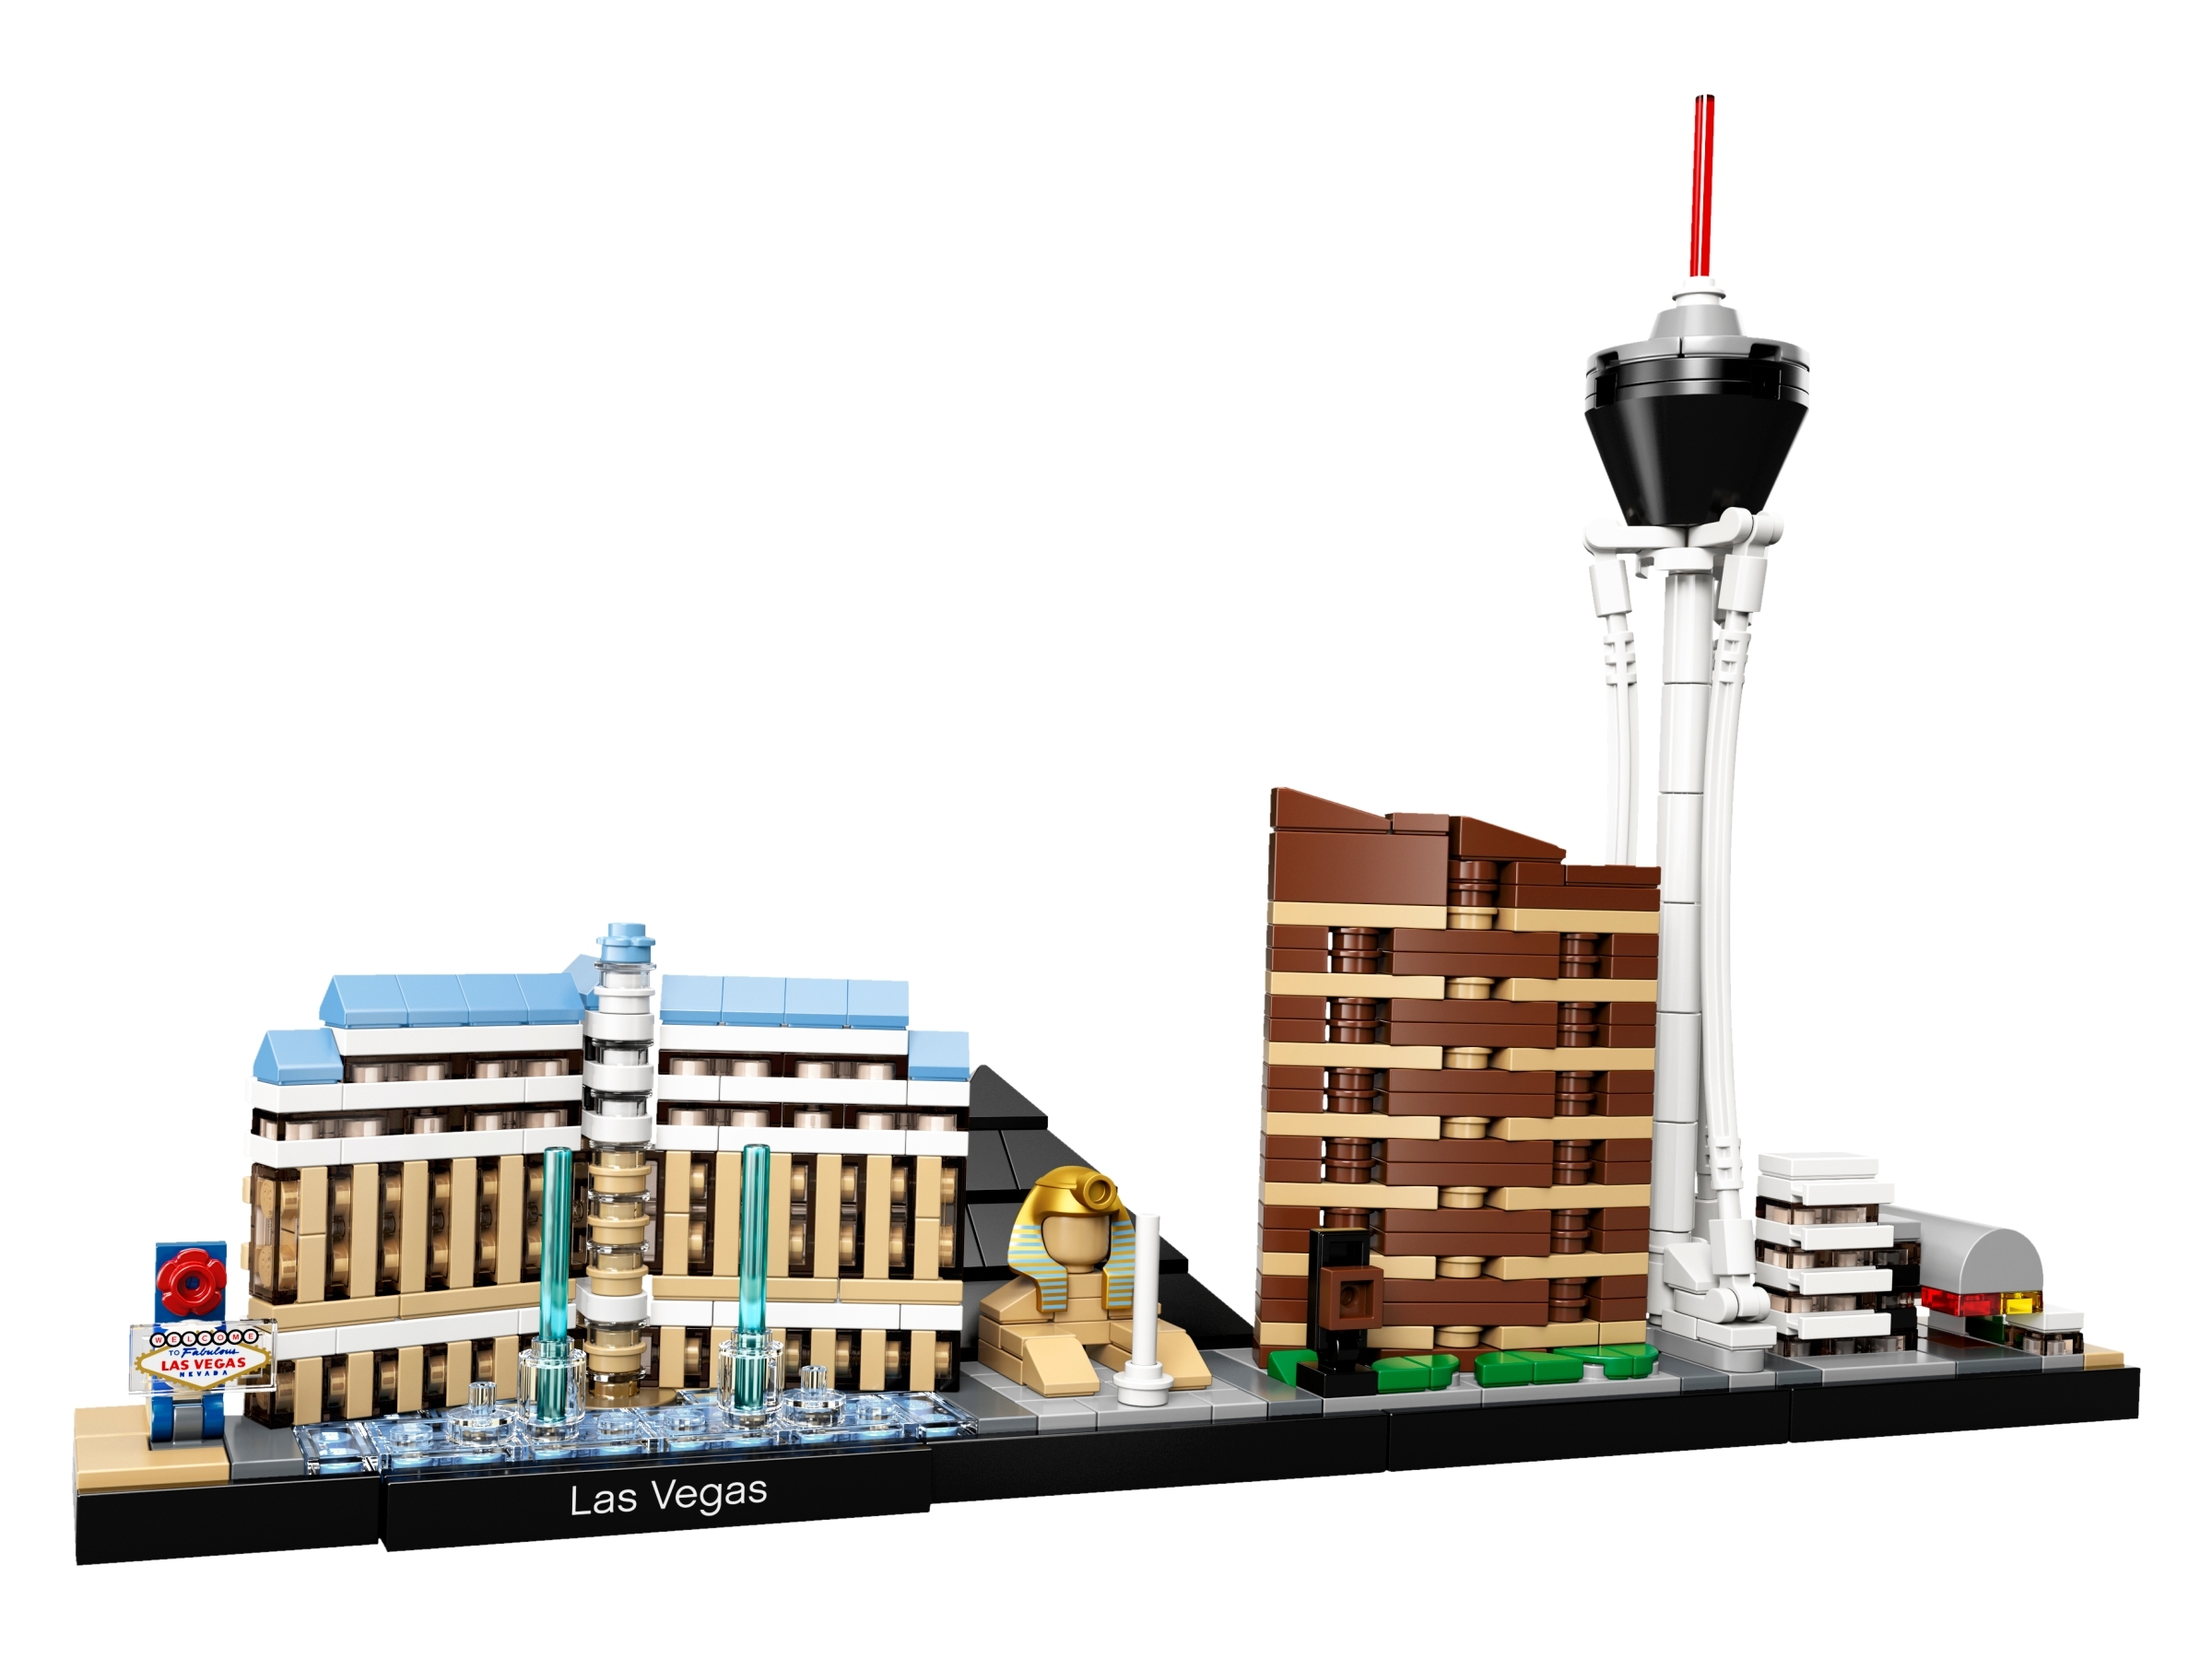 LEGO IDEAS - Welcome To Fabulous Las Vegas!